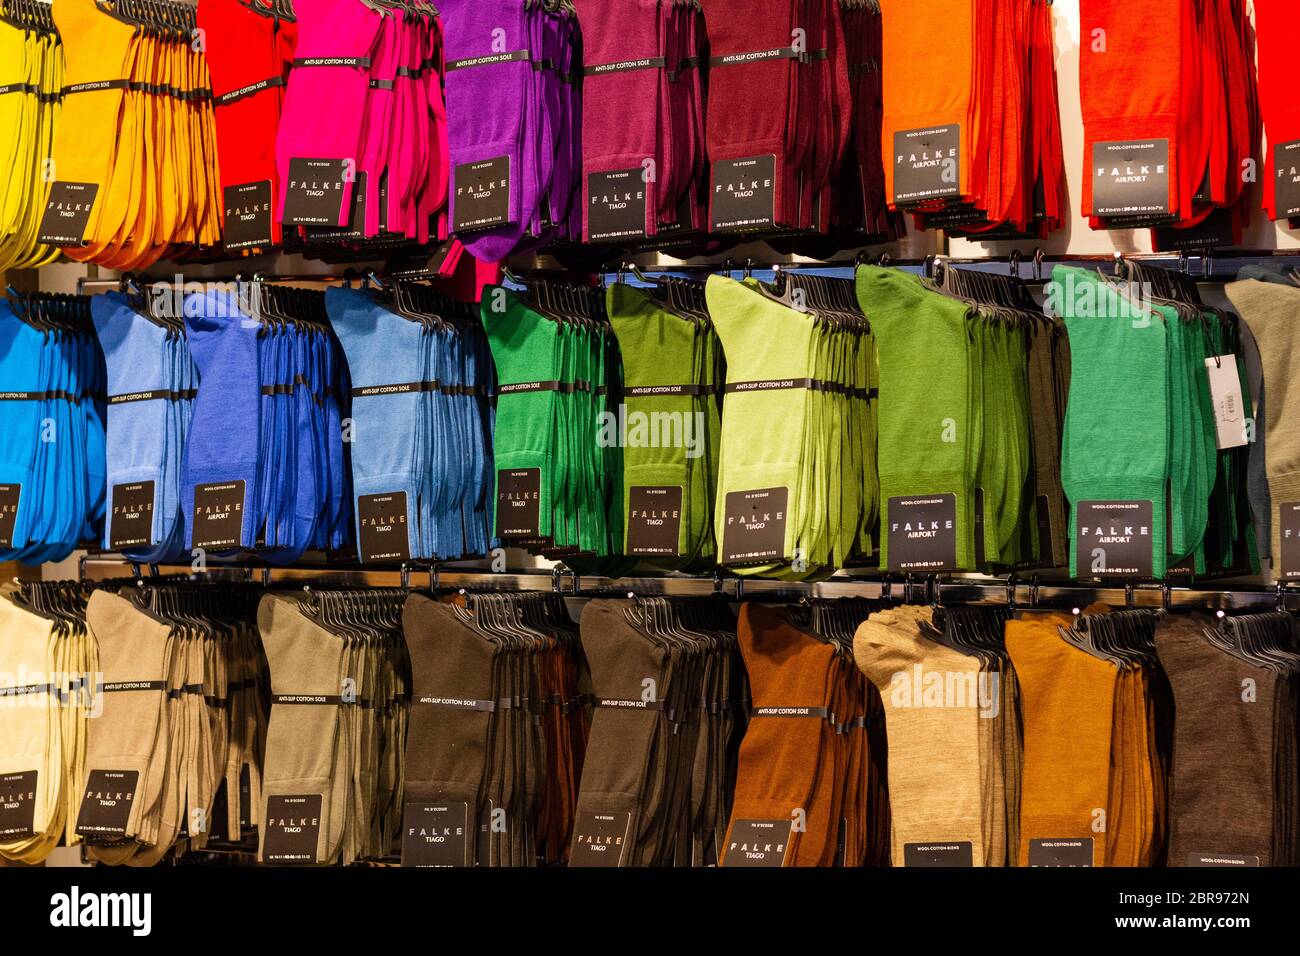 Schwechat, Österreich. 2020/02/06. Socken in verschiedenen Farben der Marke Falke in einem Store am Flughafen Wien zu sehen. Stockfoto